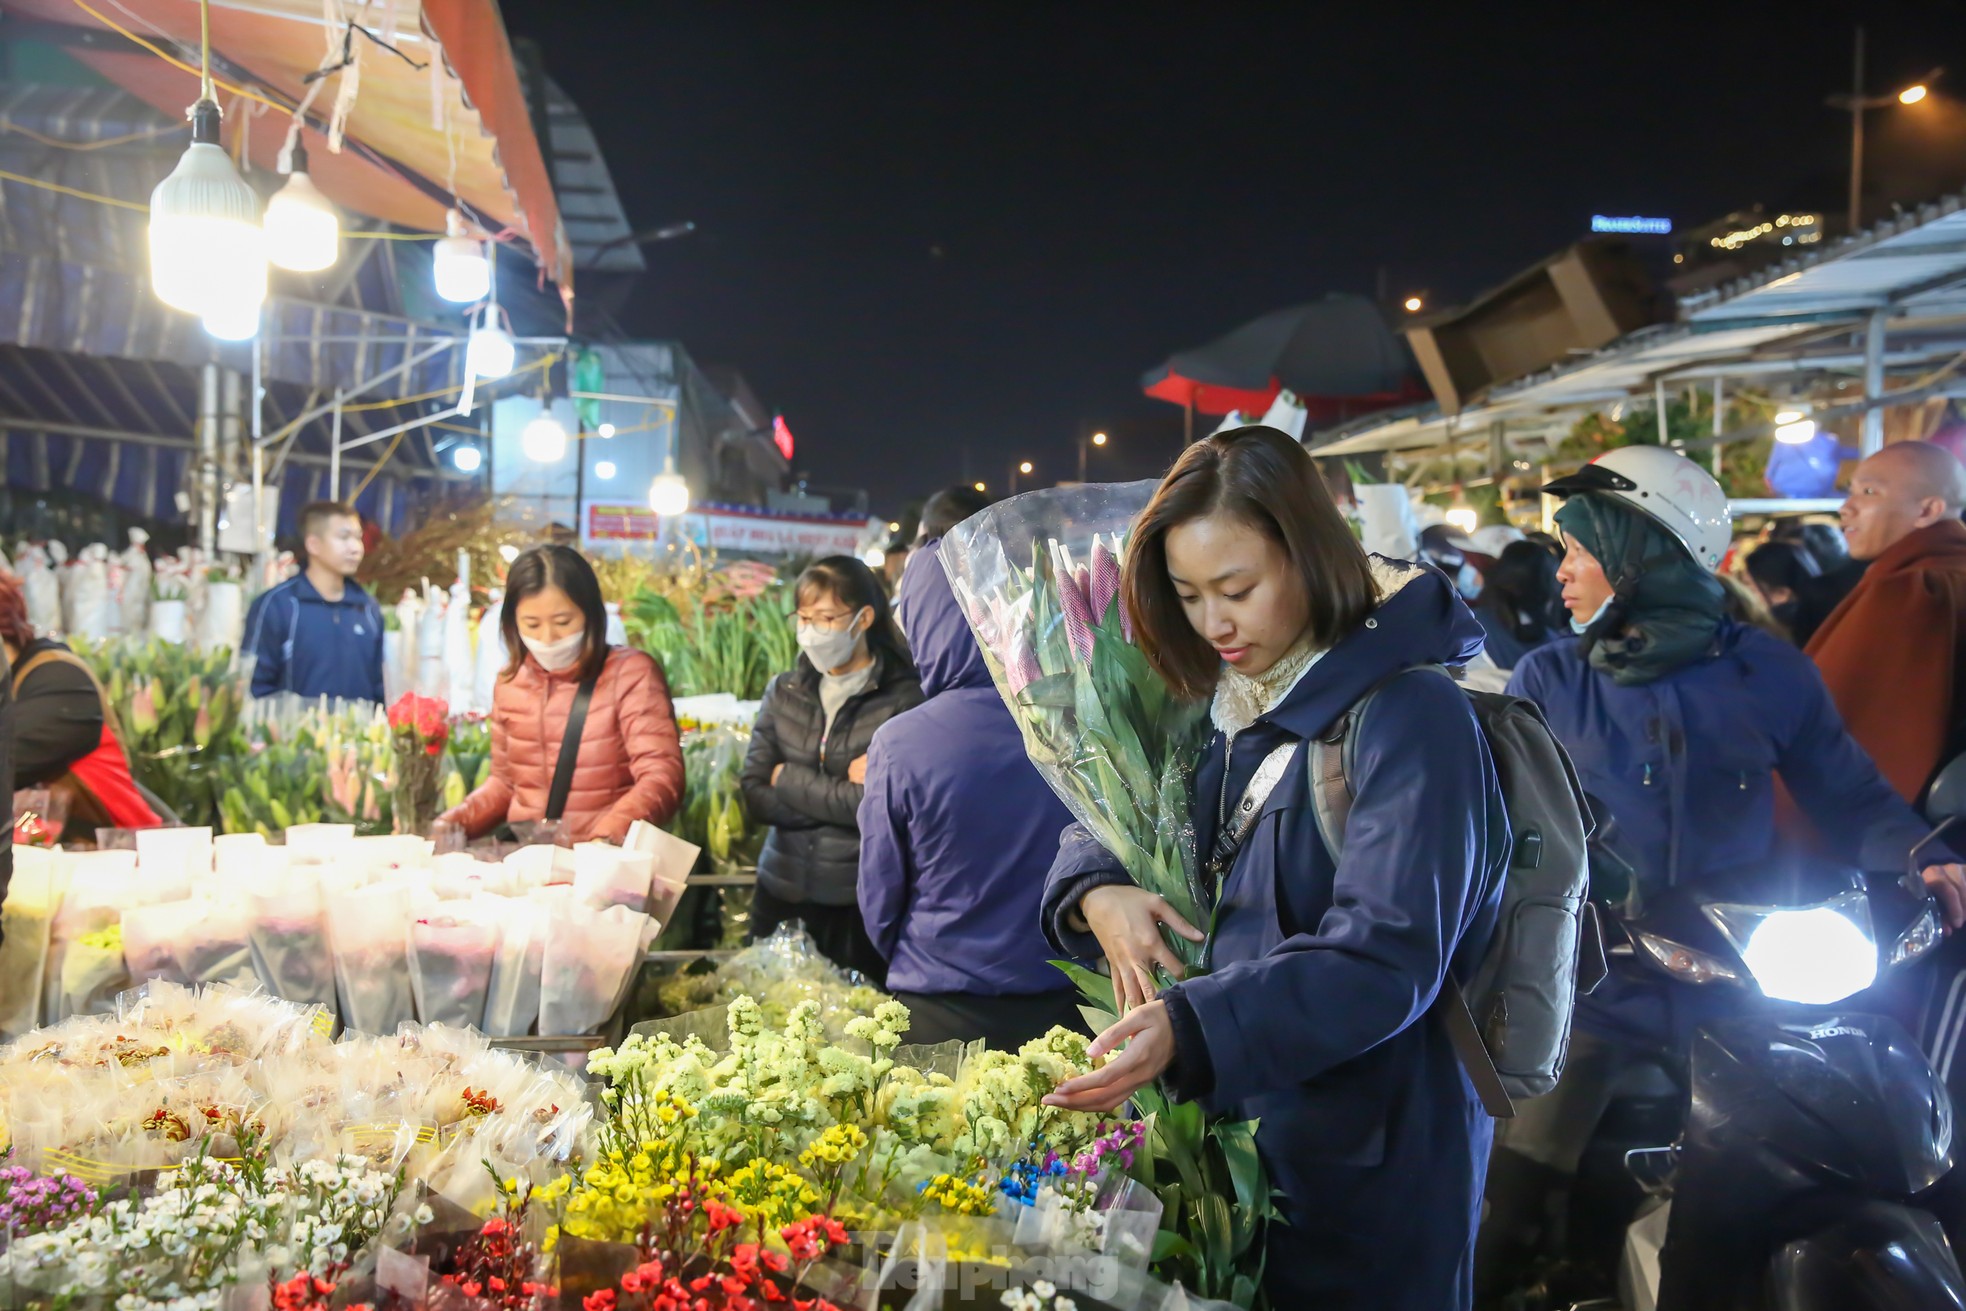 Đêm không ngủ ở chợ hoa lớn nhất Hà Nội giáp Tết - Ảnh 6.